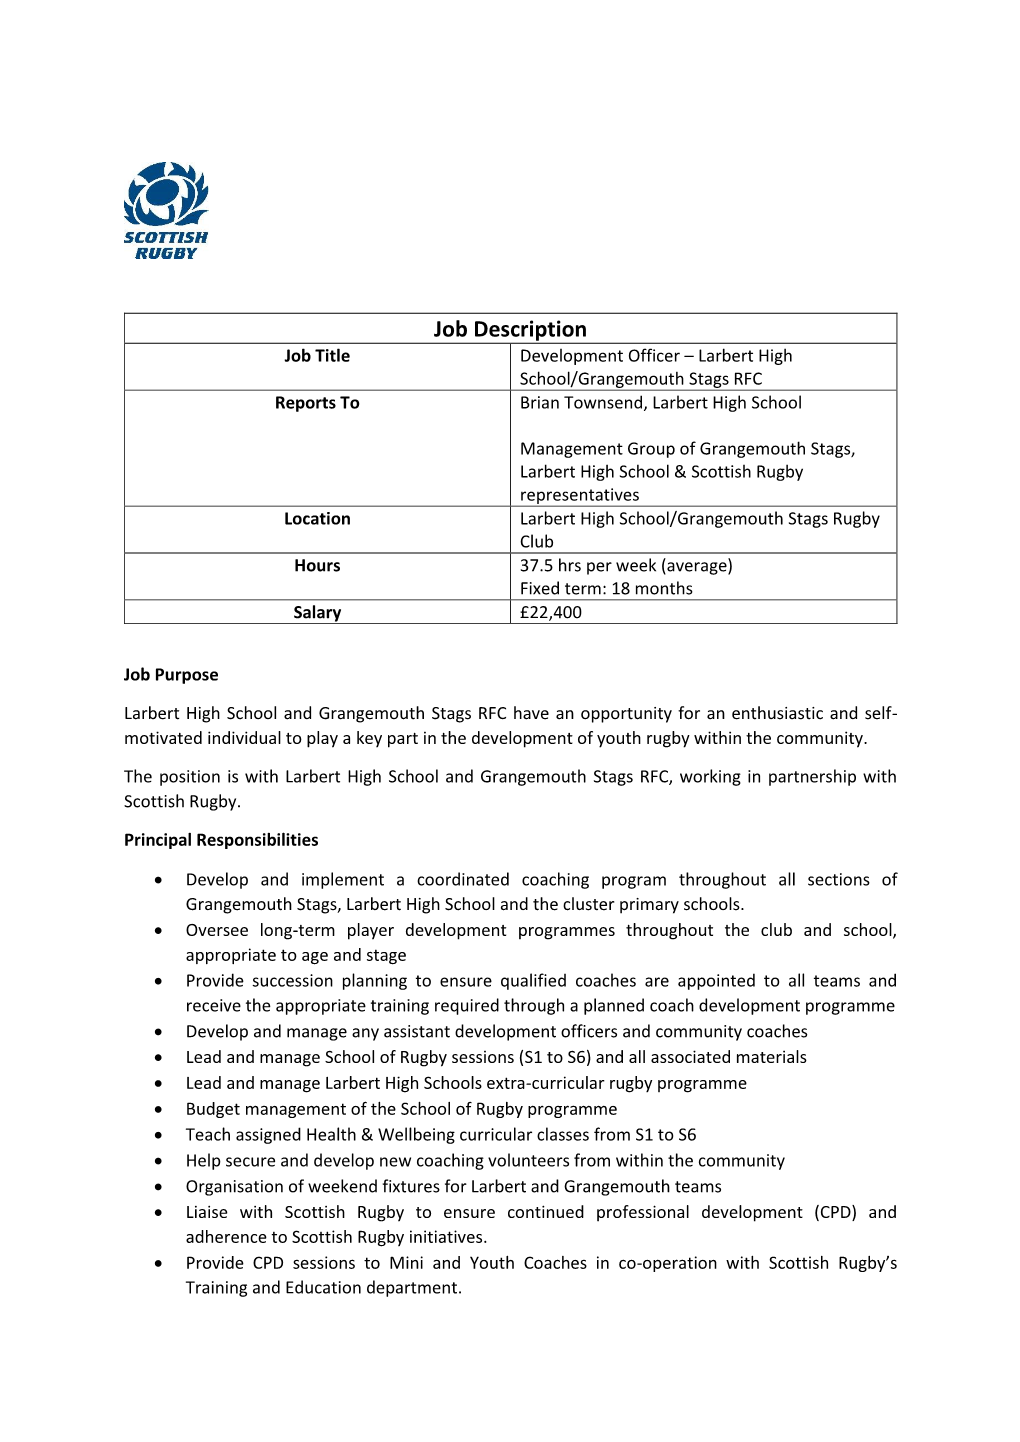 Job Description Job Title Development Officer – Larbert High School/Grangemouth Stags RFC Reports to Brian Townsend, Larbert High School